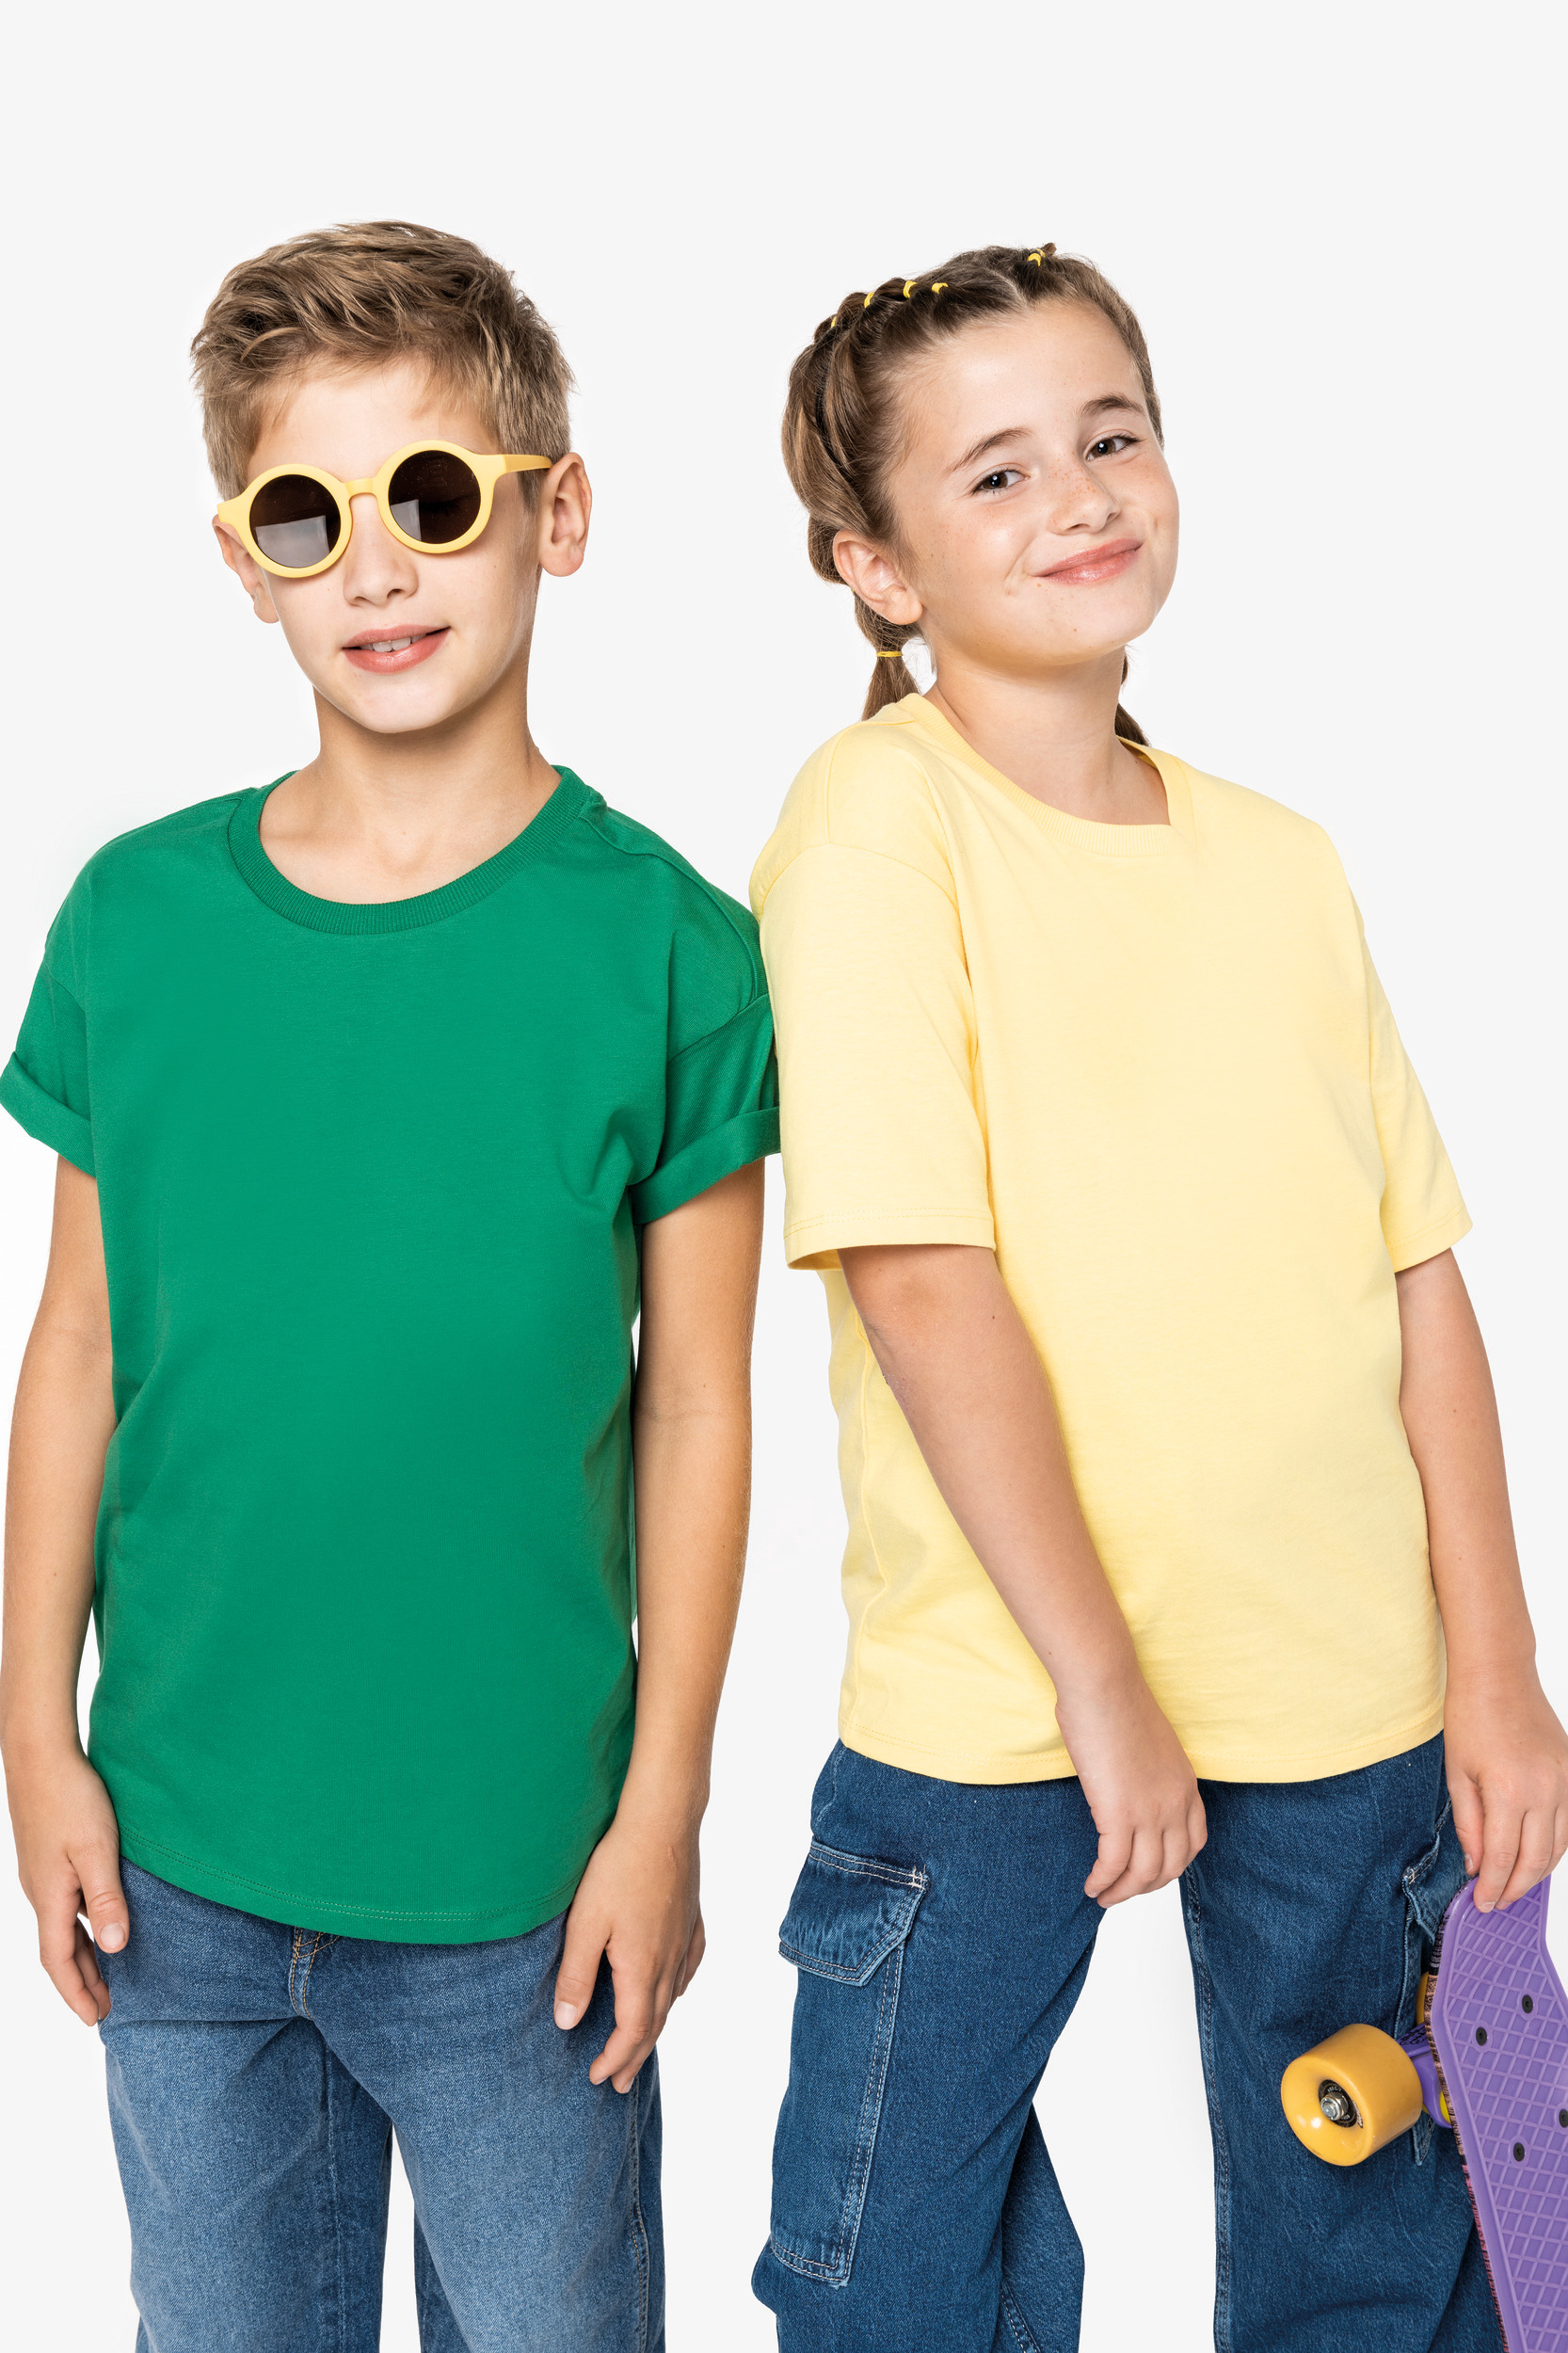 NS306 - Camiseta mangas caídas infantil